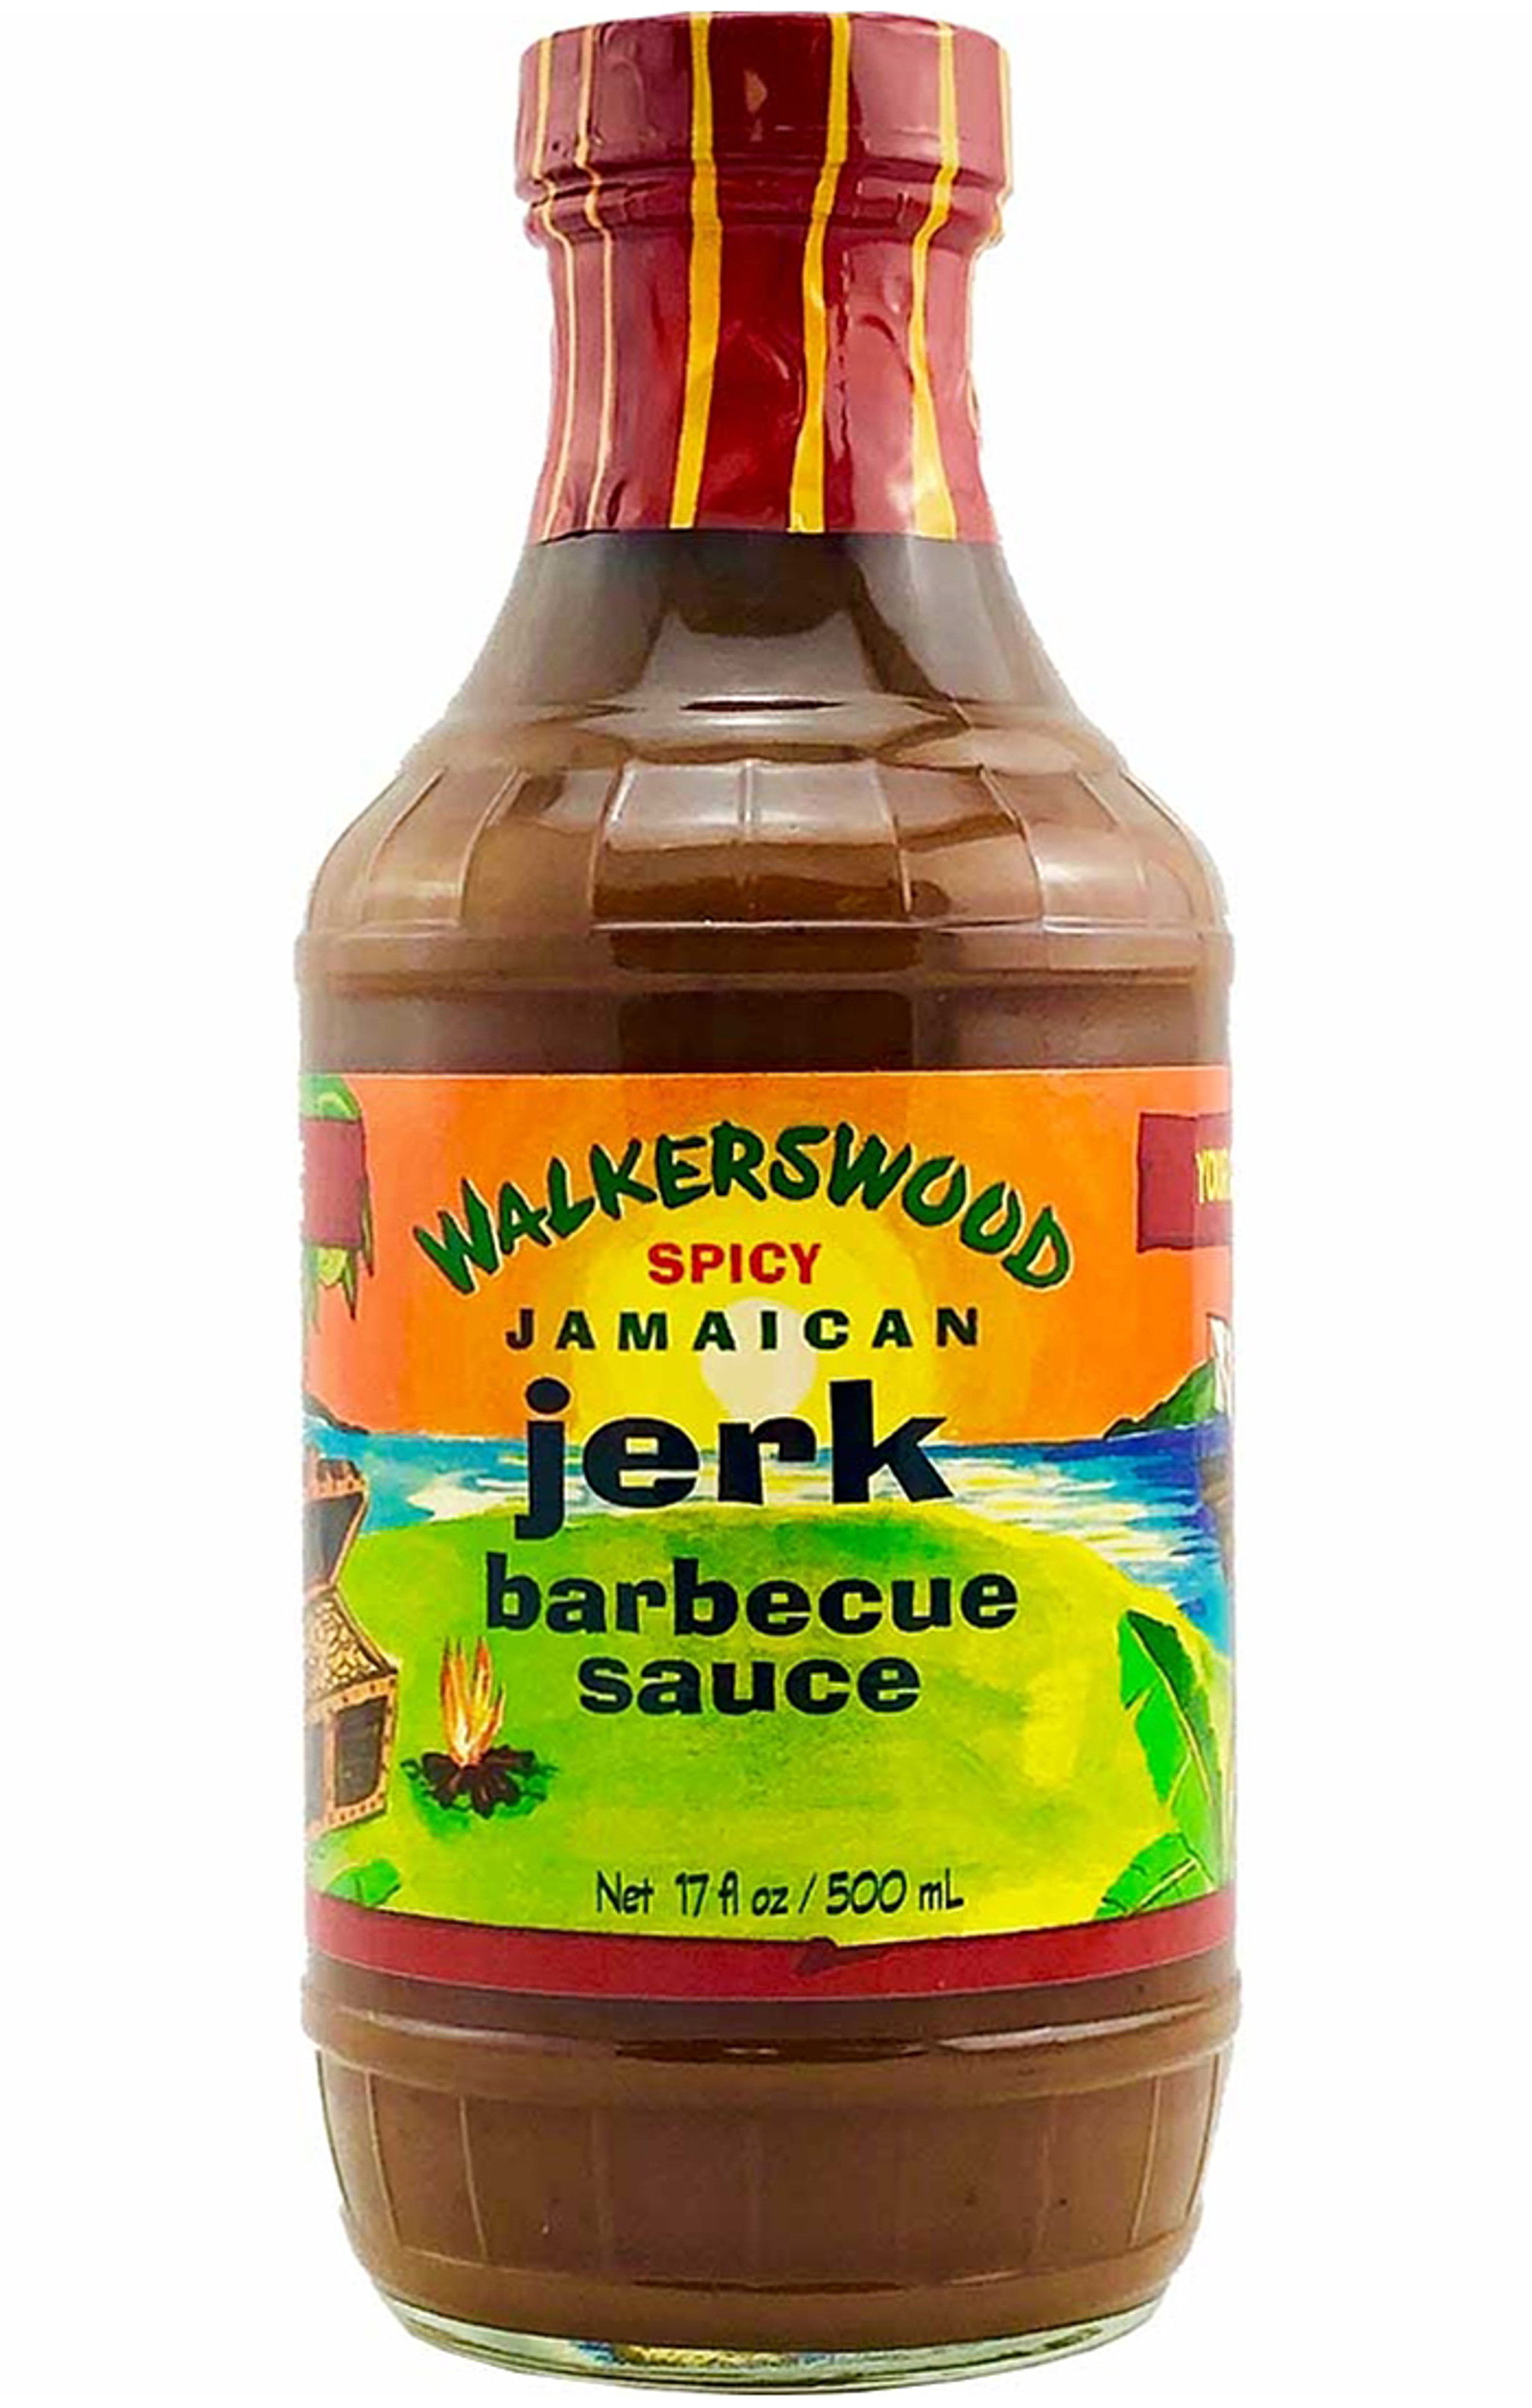 Walkerswood Spicy Jamaican Jerk Barbecue Sauce